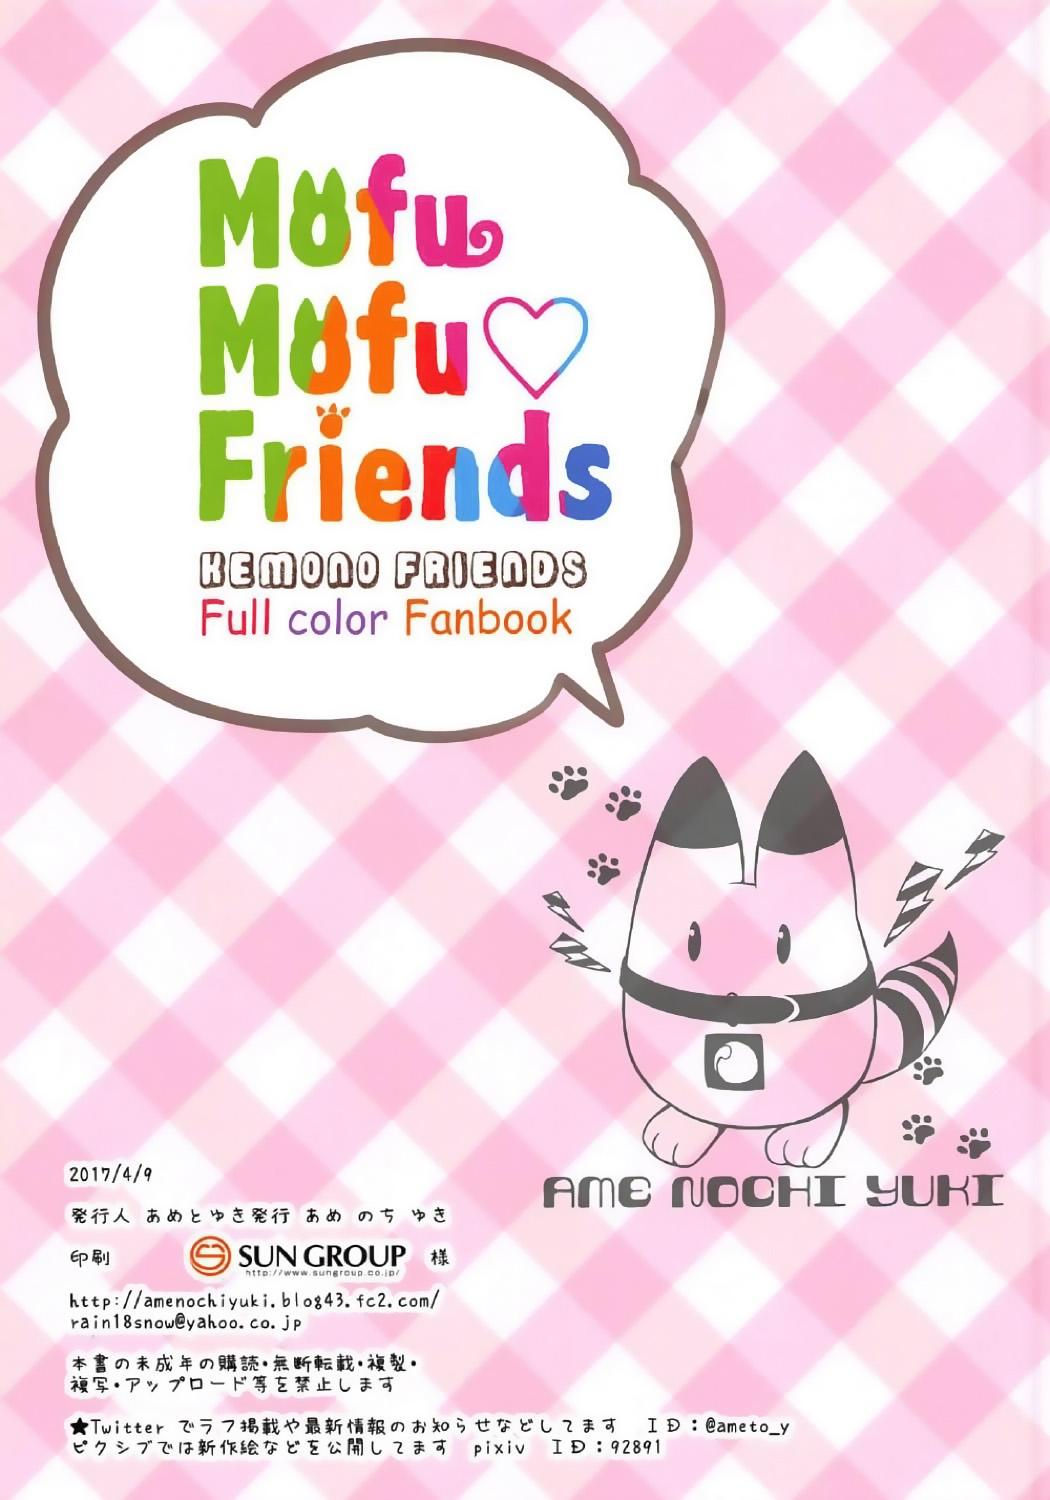 Milfsex Mofu Mofu Friends - Kemono friends Corno - Page 16